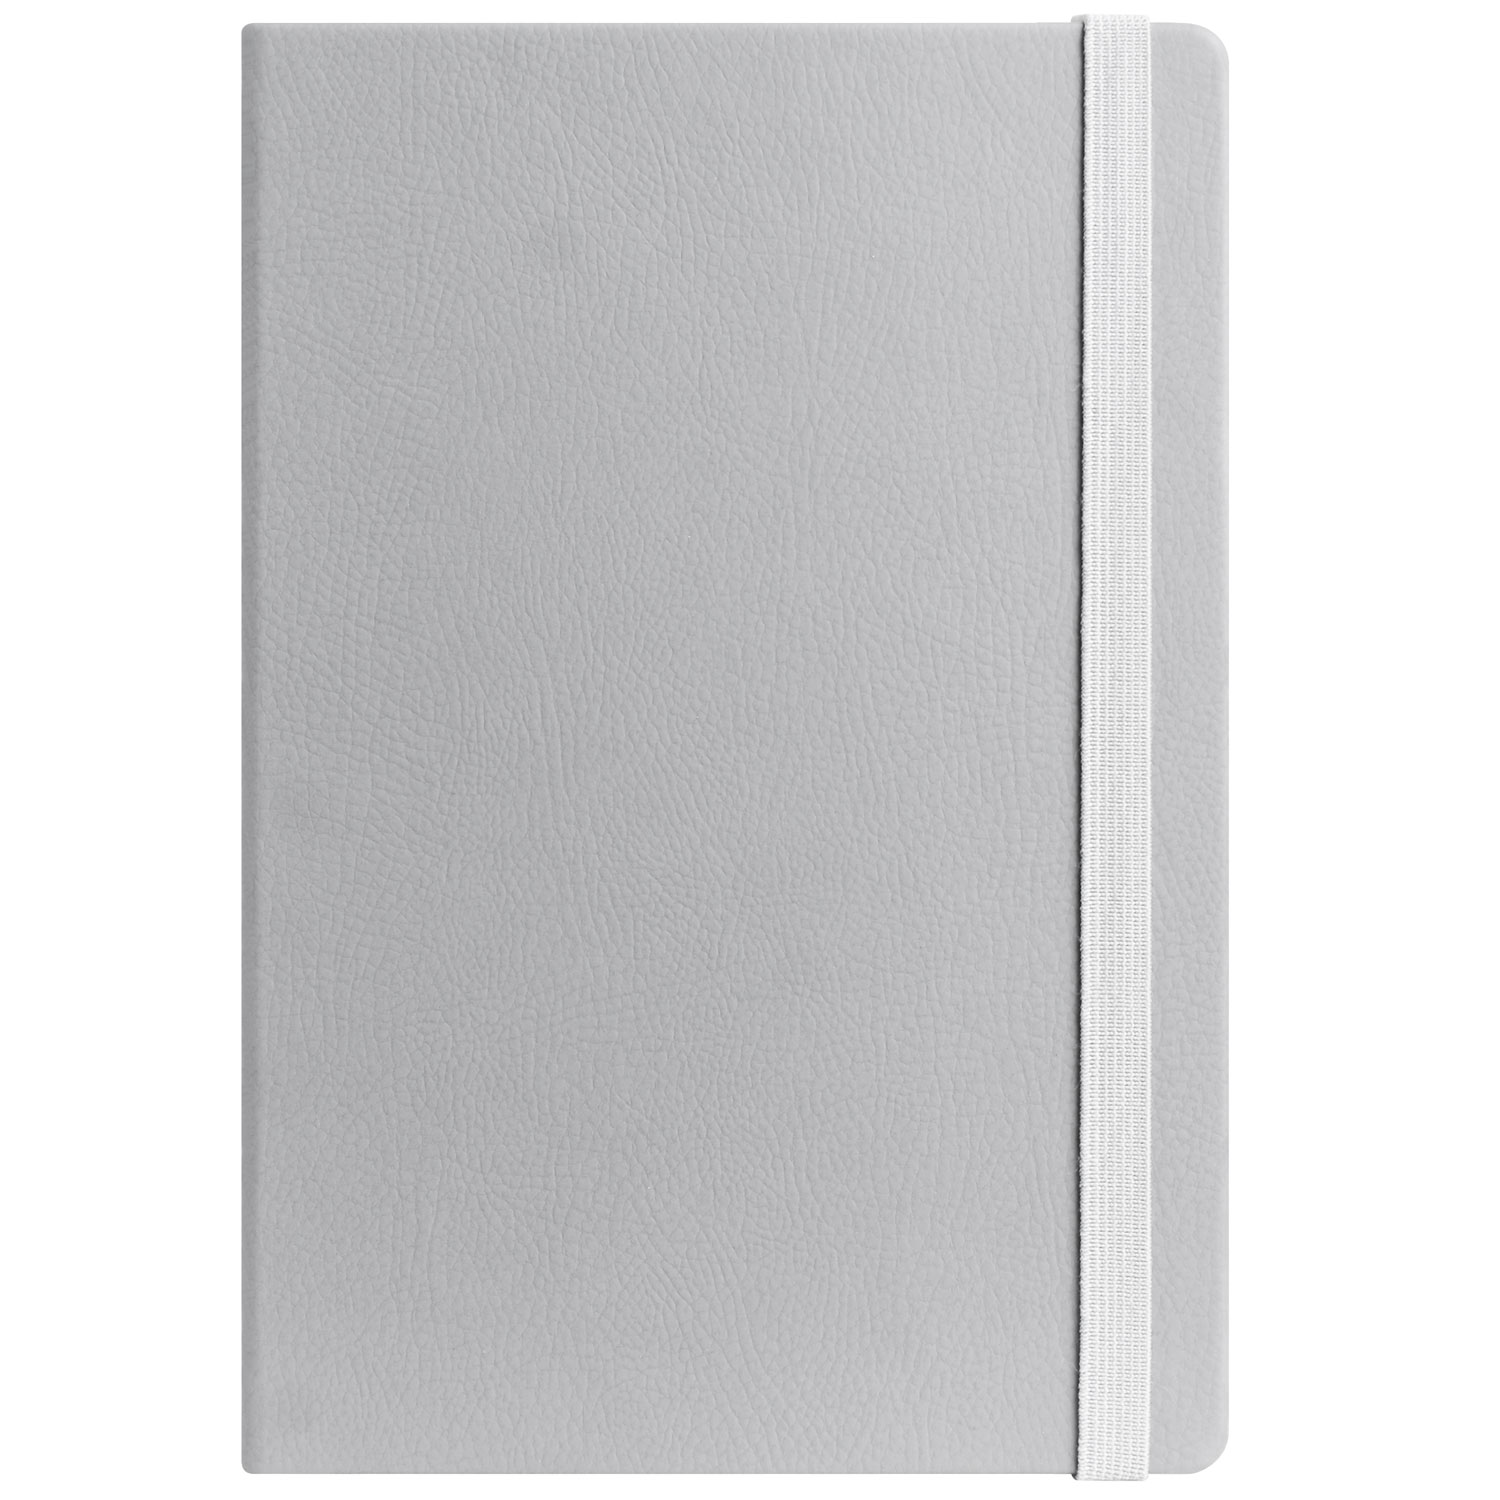 Ежедневник недатированный Marseille soft touch BtoBook, серый (без упаковки, без стикера)